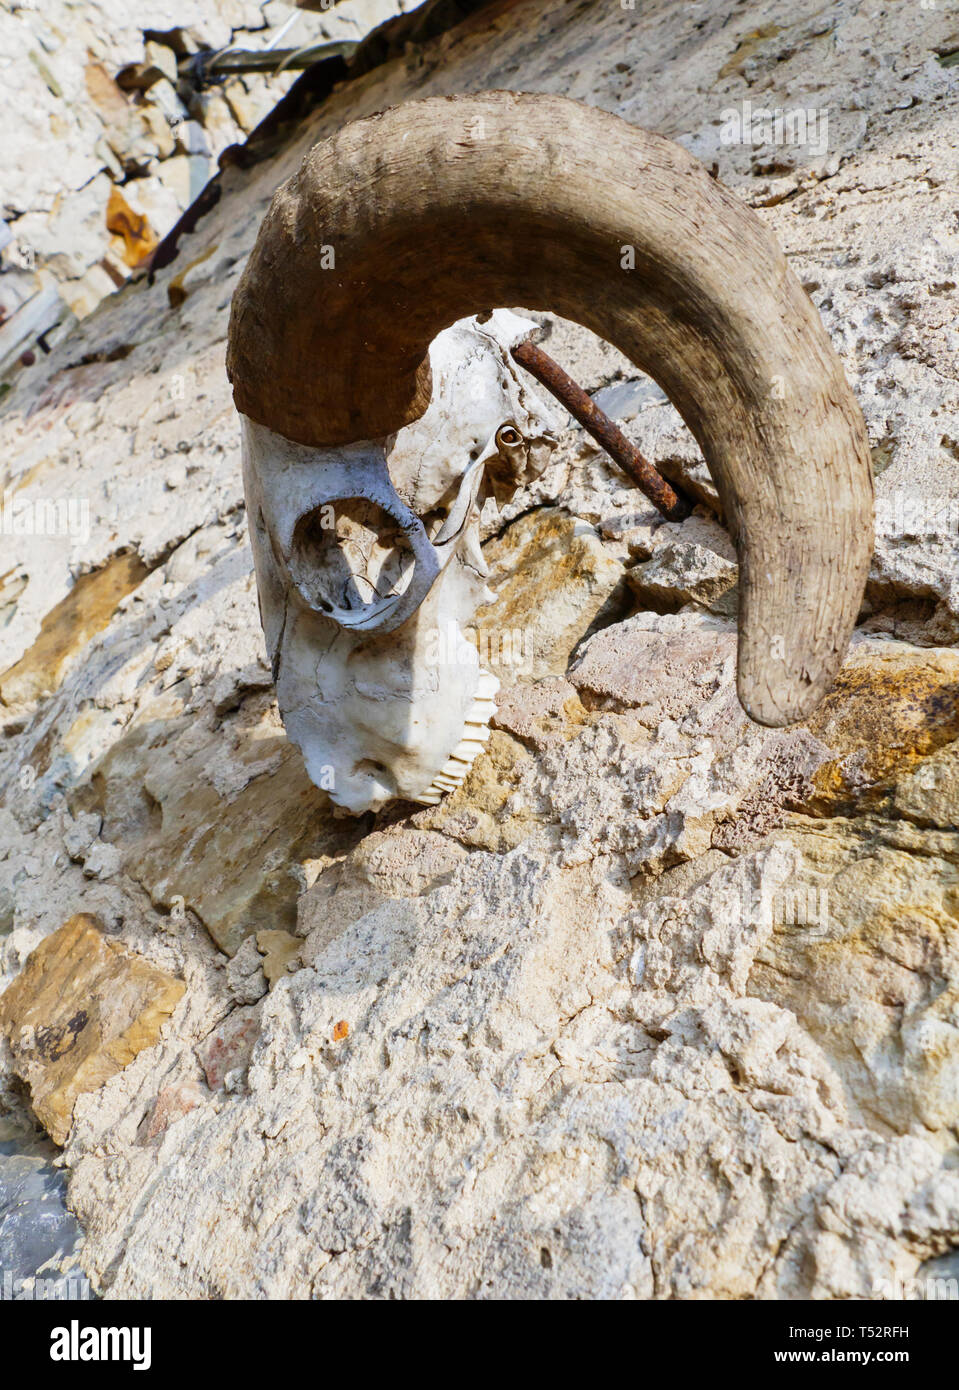 Schädel, skelett einer Ziege, mit großen, gebogenen Hörner, hängt an einer Mauer Stock Photo